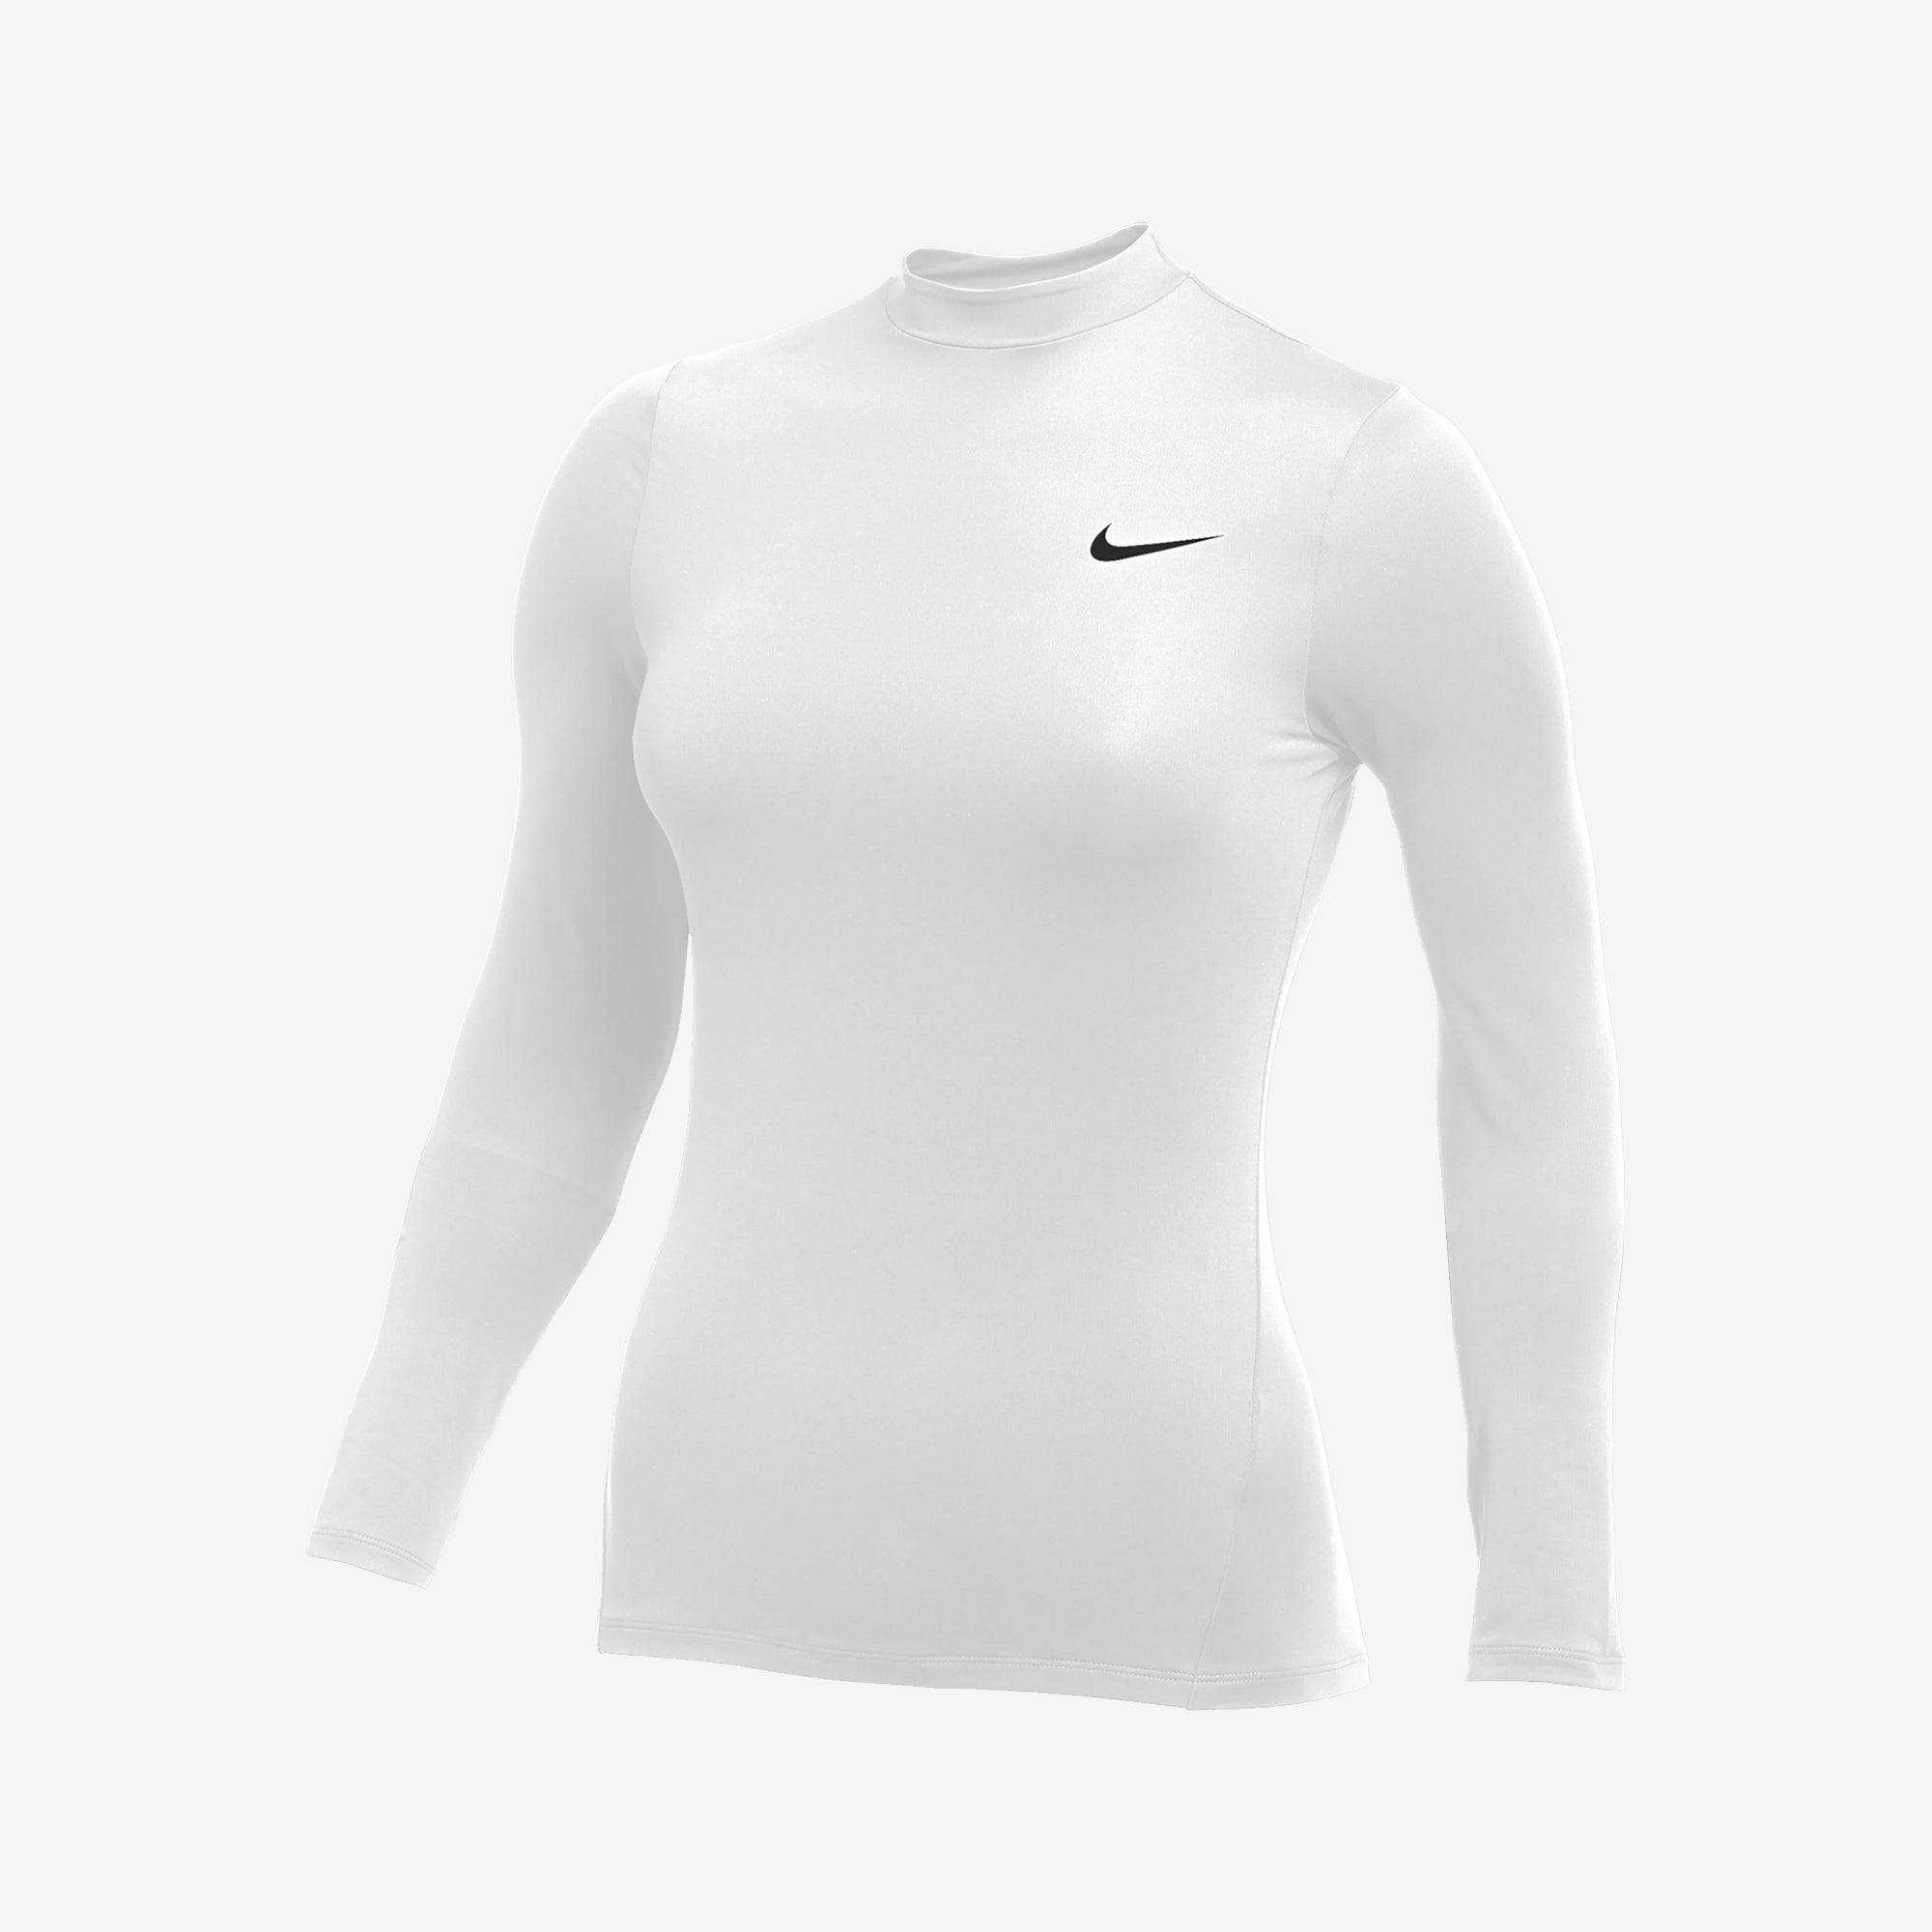 Nike Pro Women's Long Sleeve Warm Top